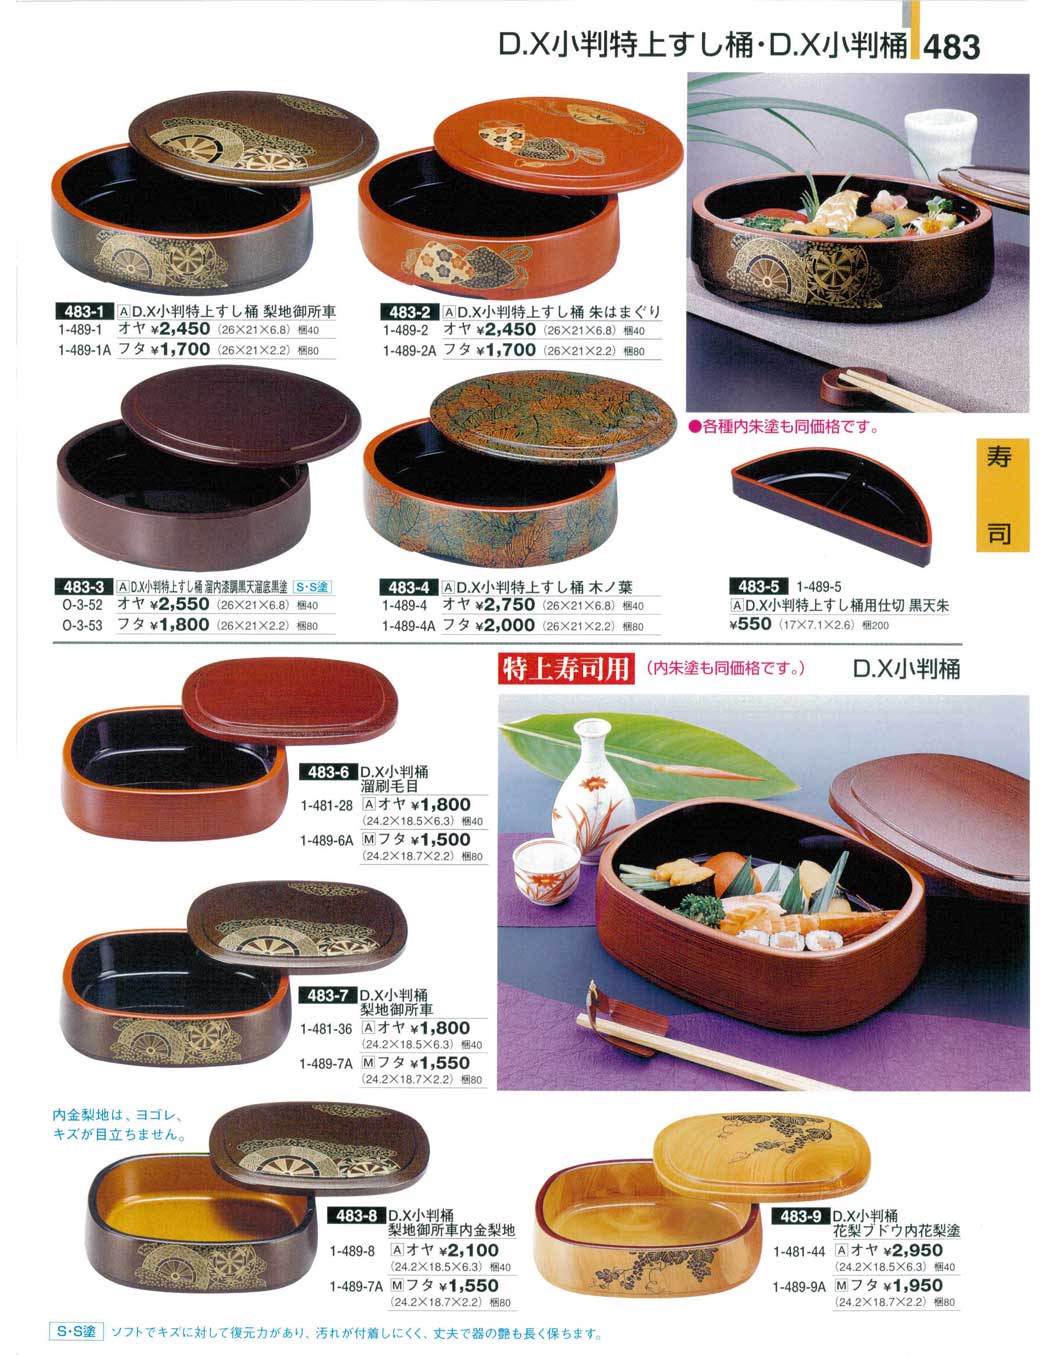 日本代理店正規品 寿司 OPP (7-458-8) 料亭 旅館 和食器 飲食店 業務用 通販 